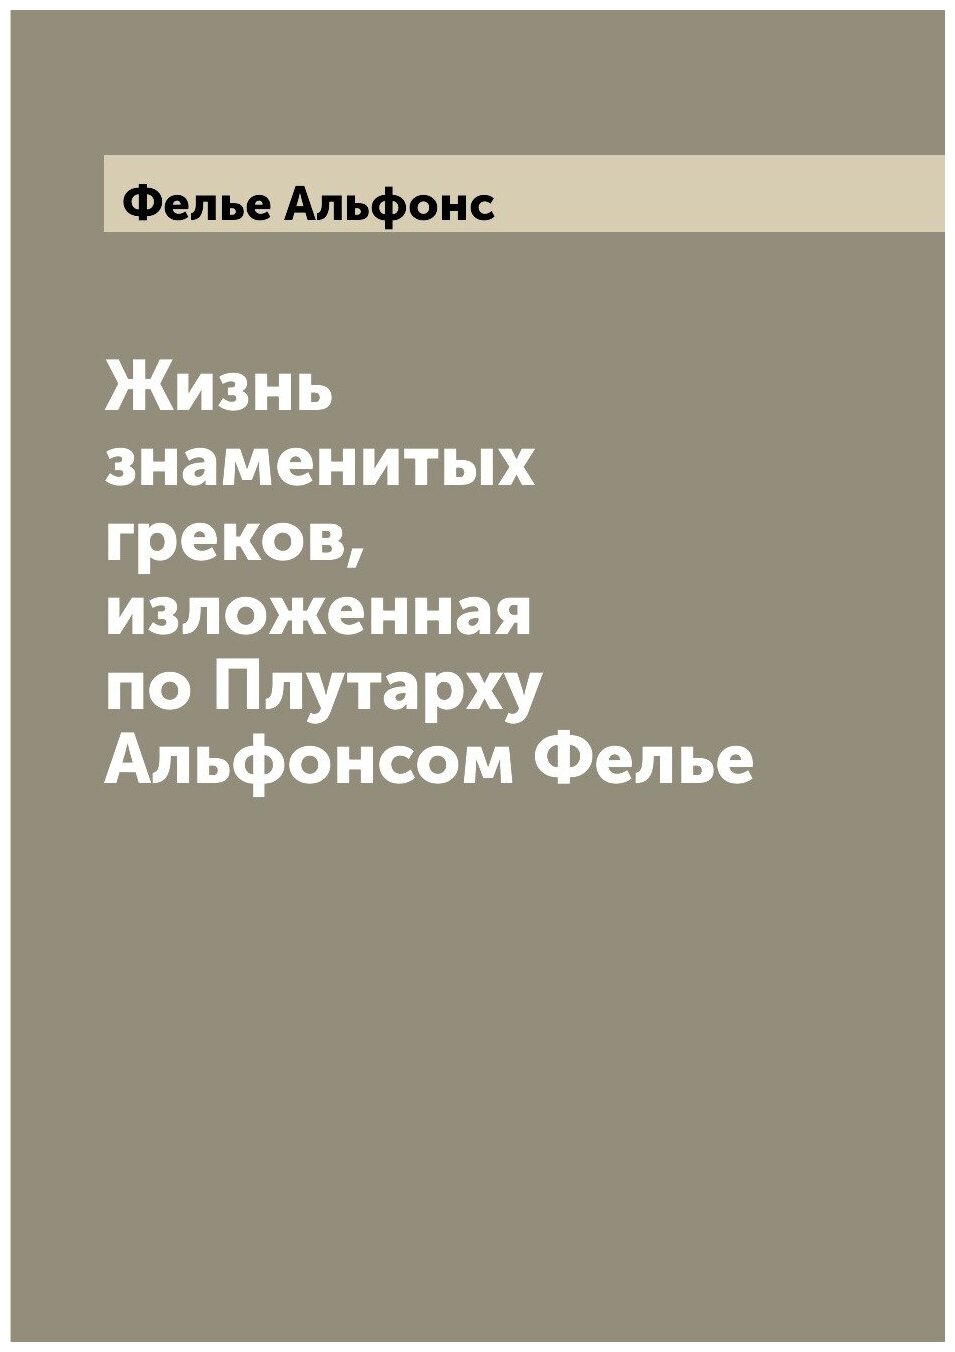 Жизнь знаменитых греков, изложенная по Плутарху Альфонсом Фелье